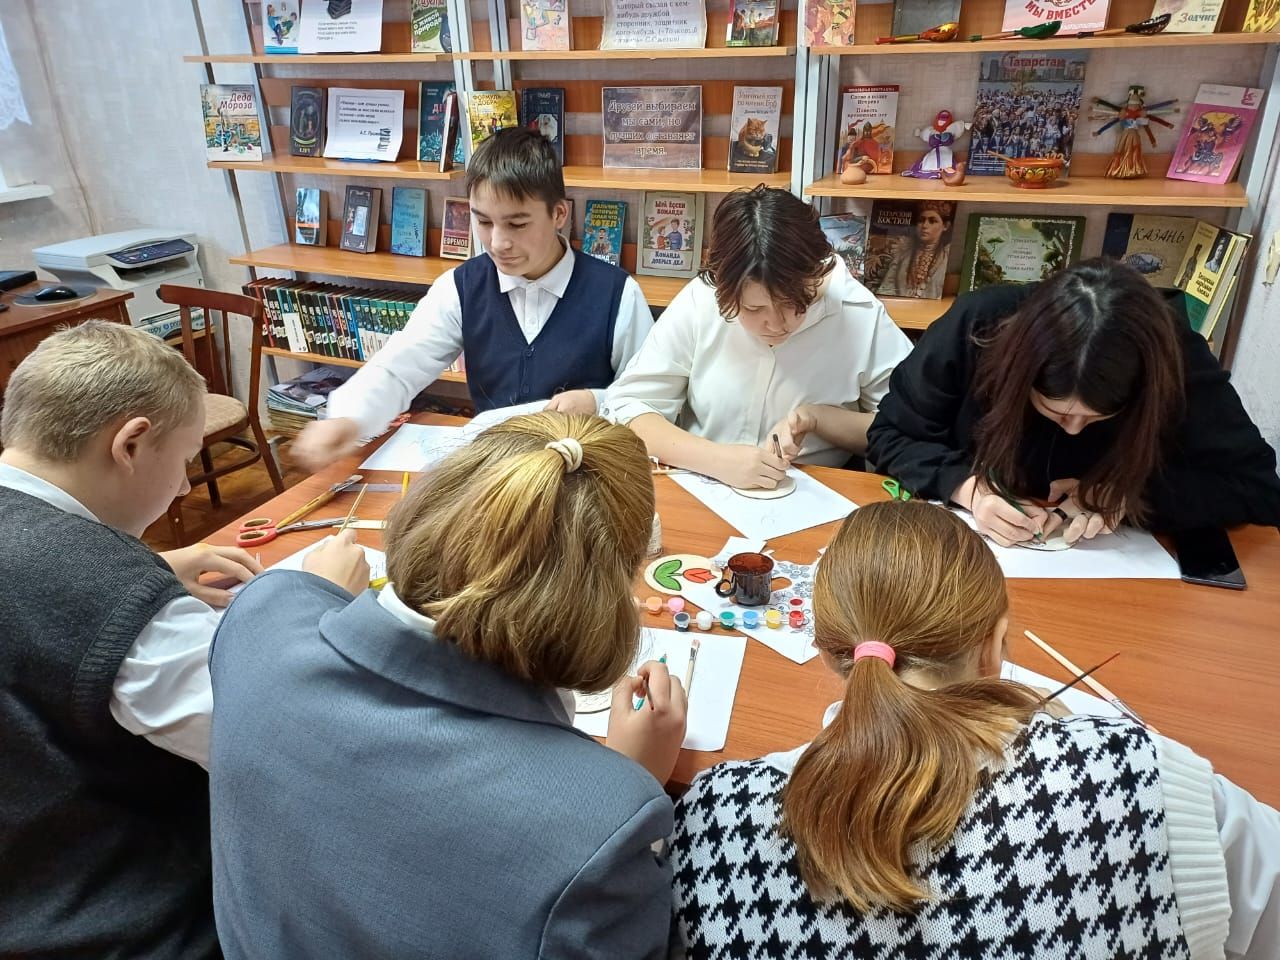 В Тюрсовхозской сельской библиотеке состоялся мастер-класс «Национальные мотивы»